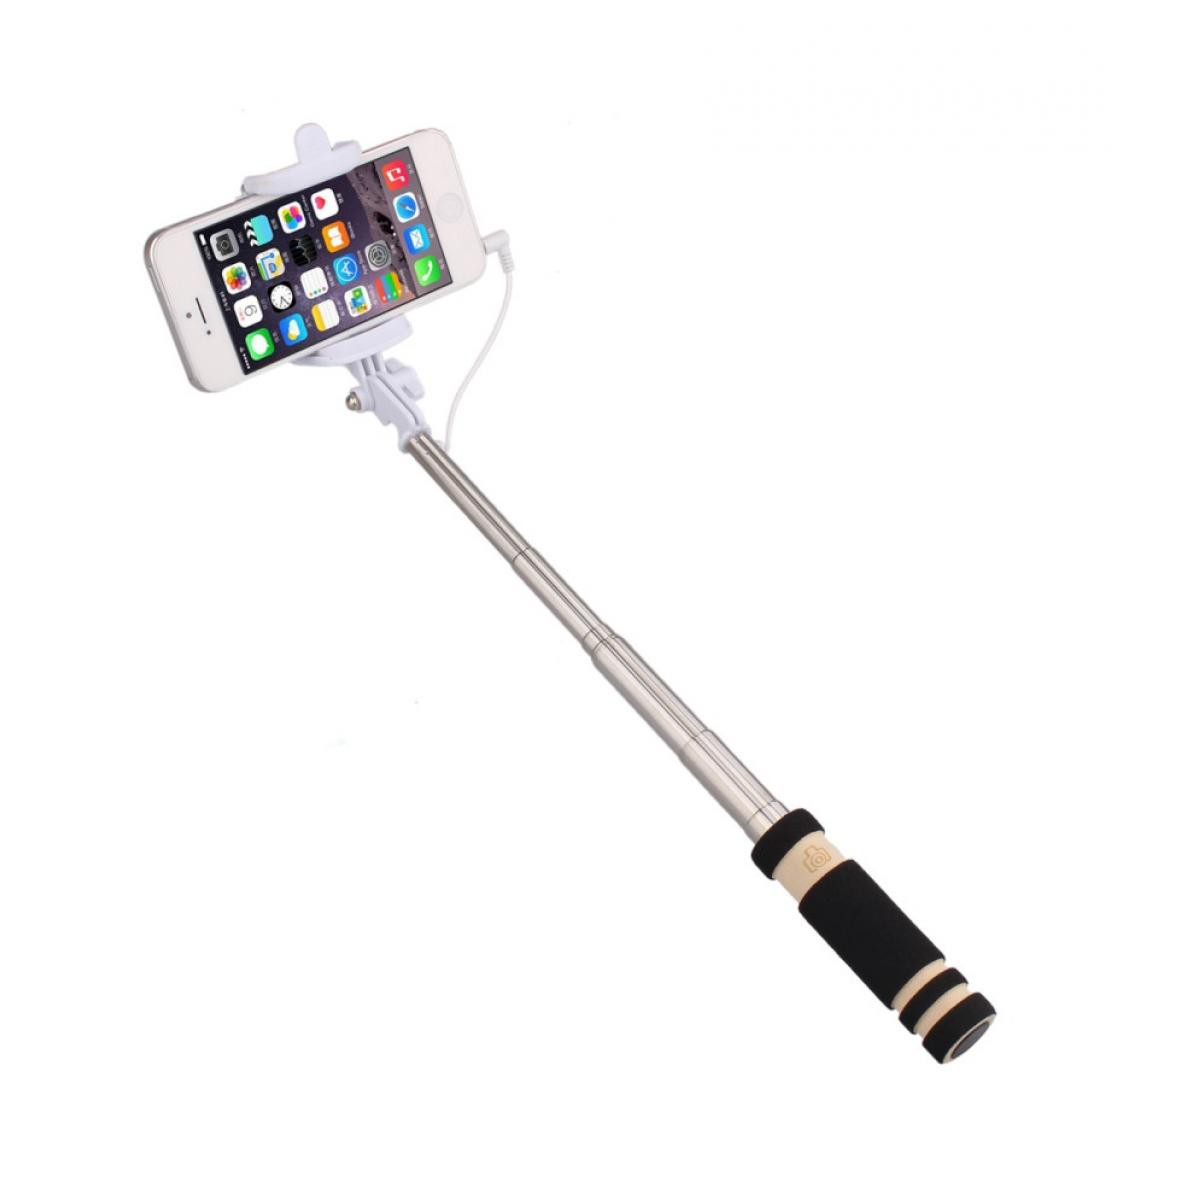 Shot - Mini Perche Selfie pour SAMSUNG Galaxy S10 Smartphone avec Cable Jack Selfie Stick Android IOS Reglable Bouton Photo (NOIR) - Autres accessoires smartphone